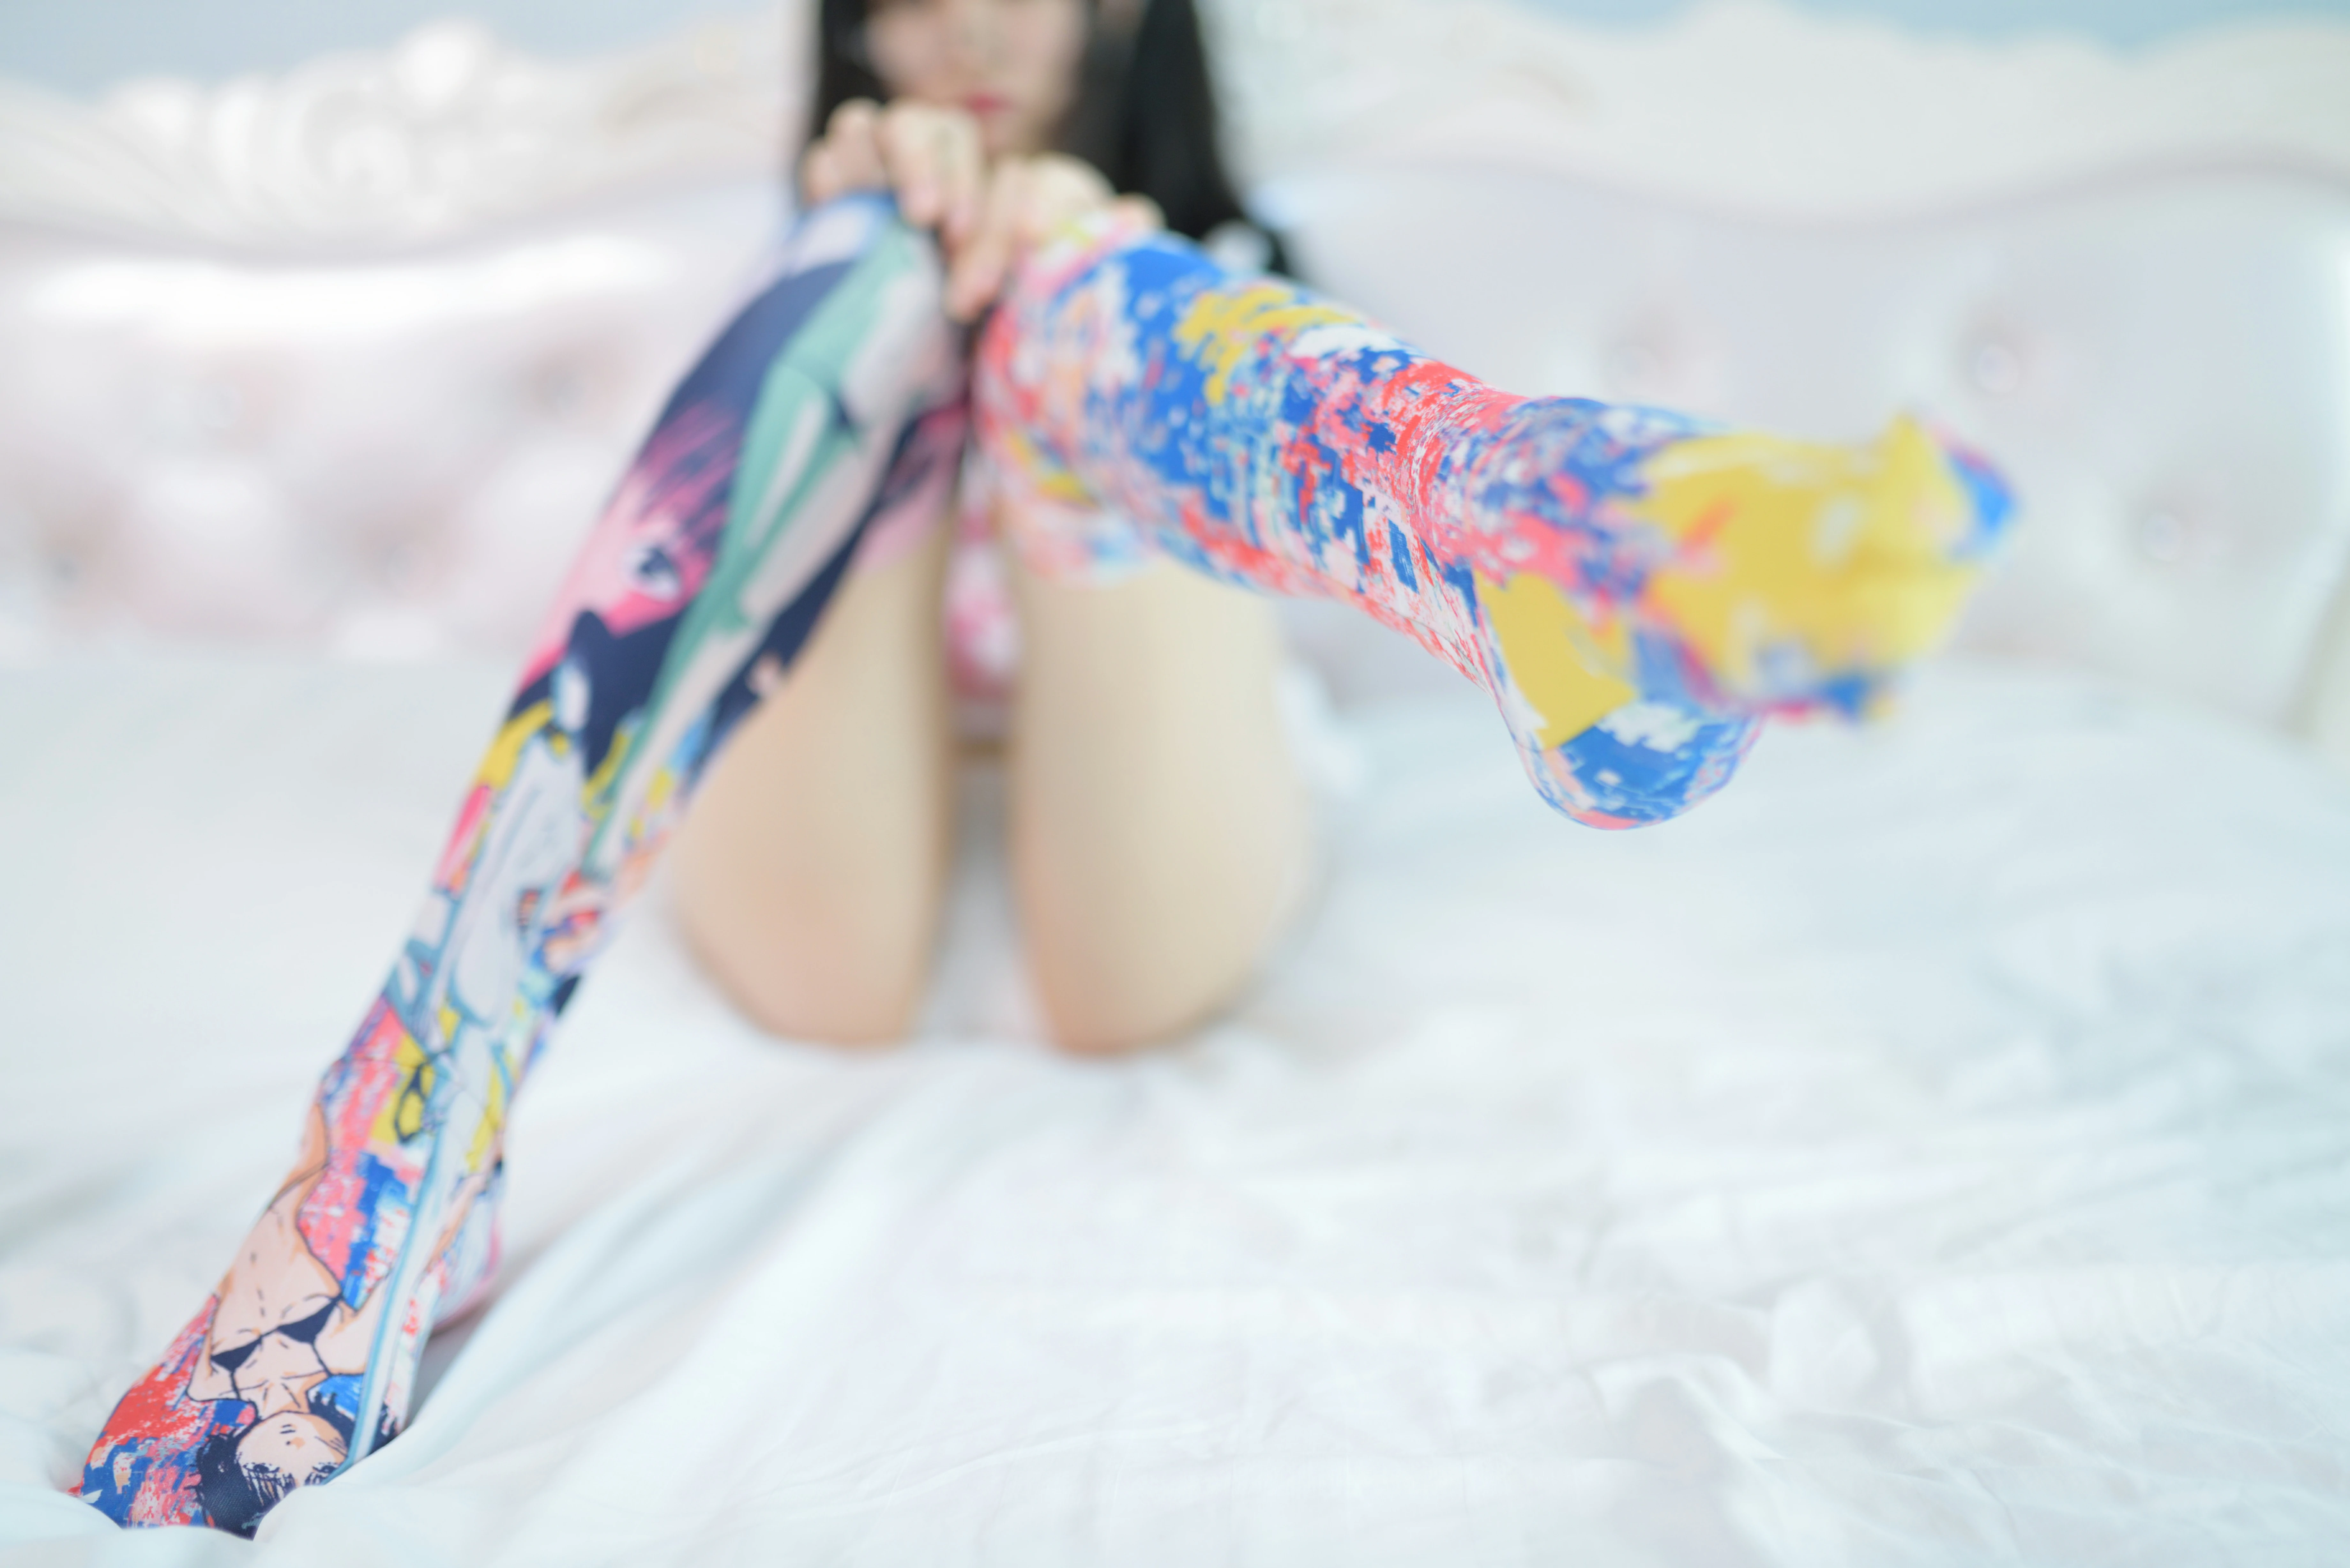 网红清纯少女 NAGISA魔物喵 电子写真 白色短袖加彩色丝袜美腿性感写真,